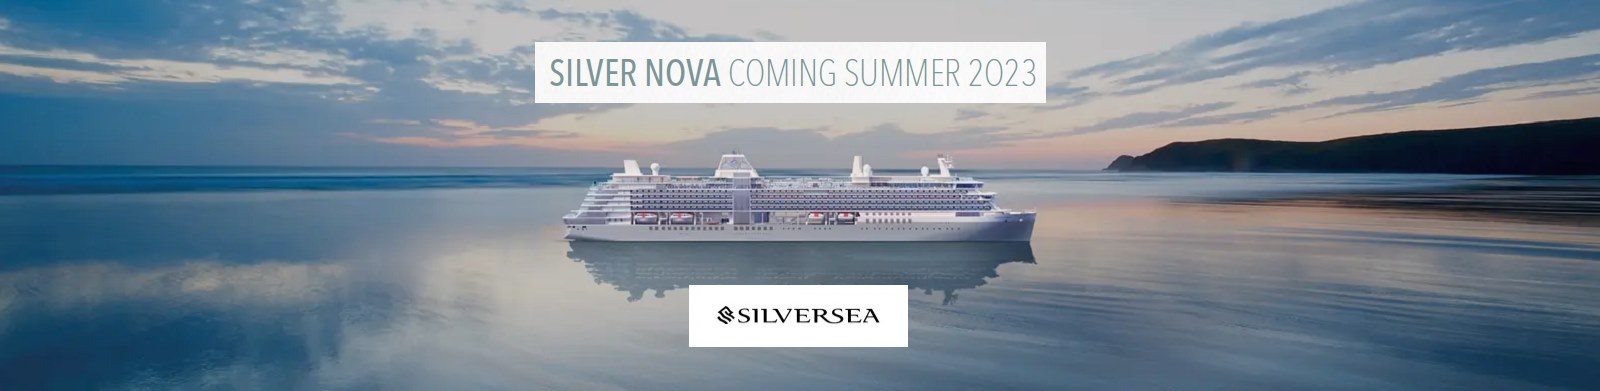 Le Silver Nova par Silversea